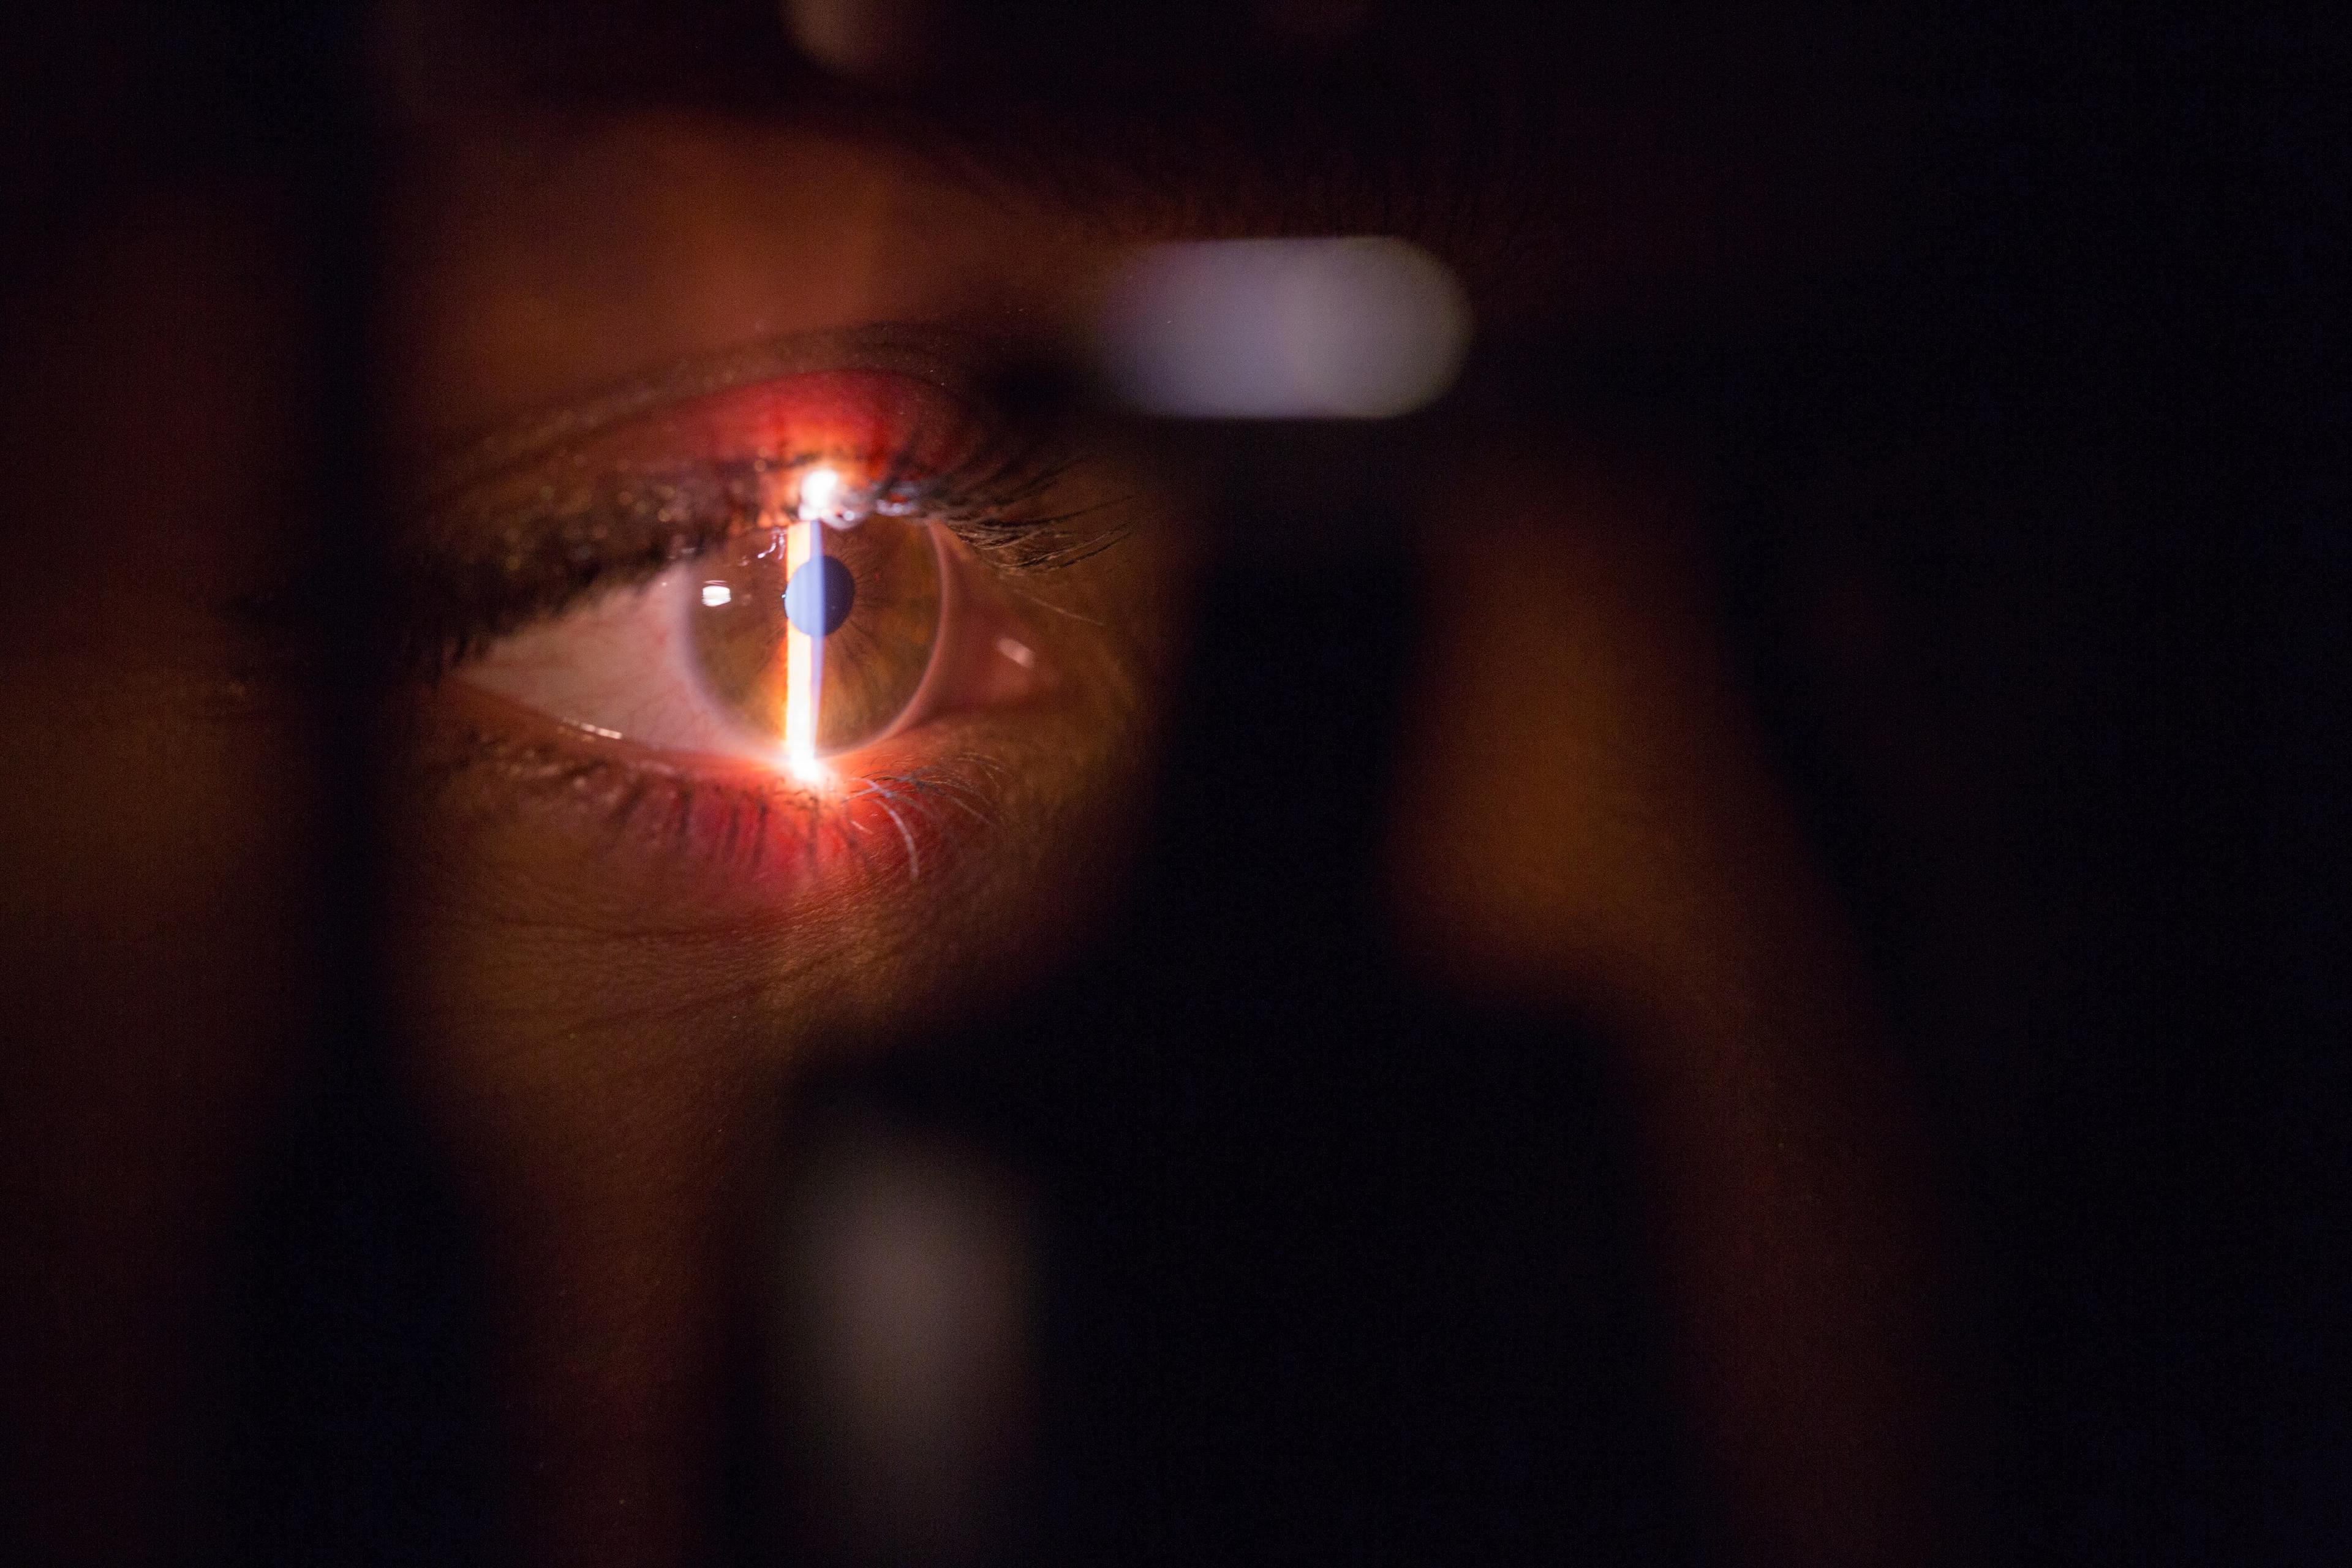 Laserowa korekcja astygmatyzmu - co trzeba wiedzieć? Laserowa korekcja wzroku – jak przygotować się do zabiegu? Wszystko, co musisz wiedzieć o laserowej korekcji wzroku 